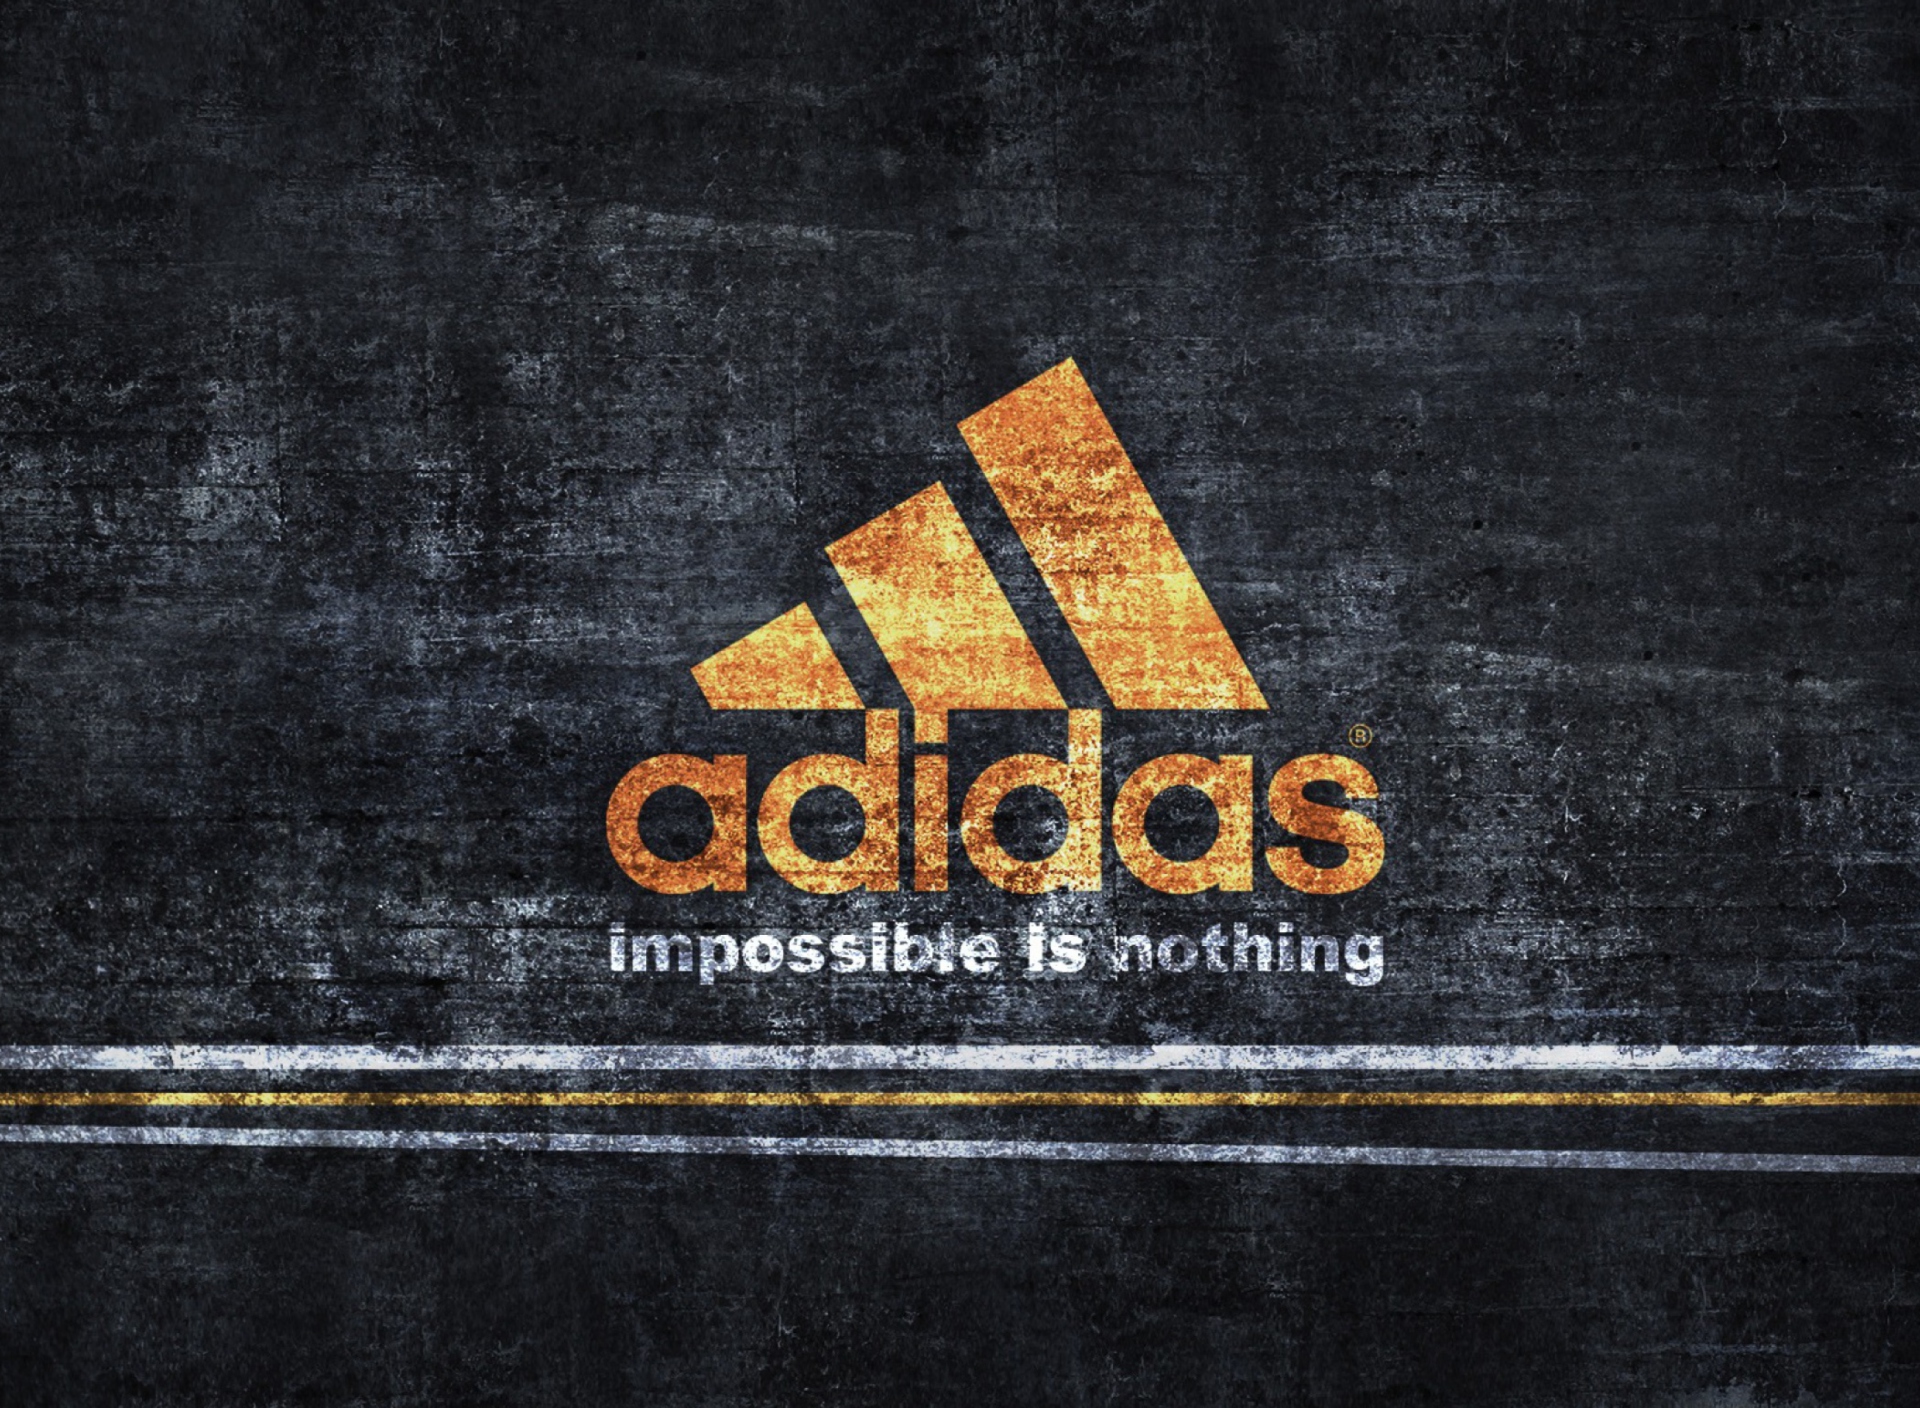 Das Adidas logo Wallpaper 1920x1408